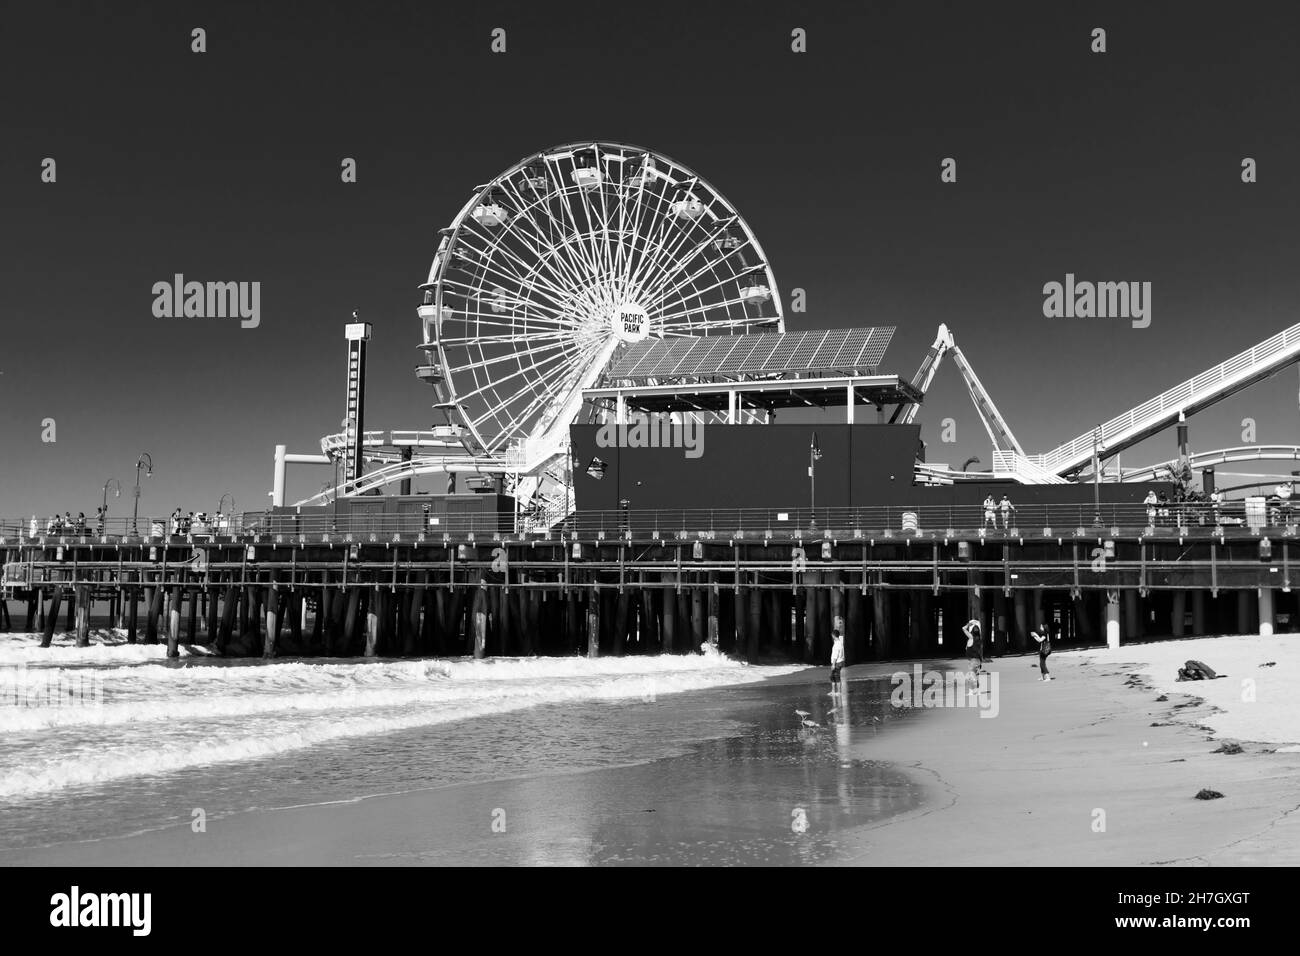 Blanco y negro, imagen monocroma de Santa Monica Pier, California, Estados Unidos de América. EE.UU. Octubre 2019 Foto de stock